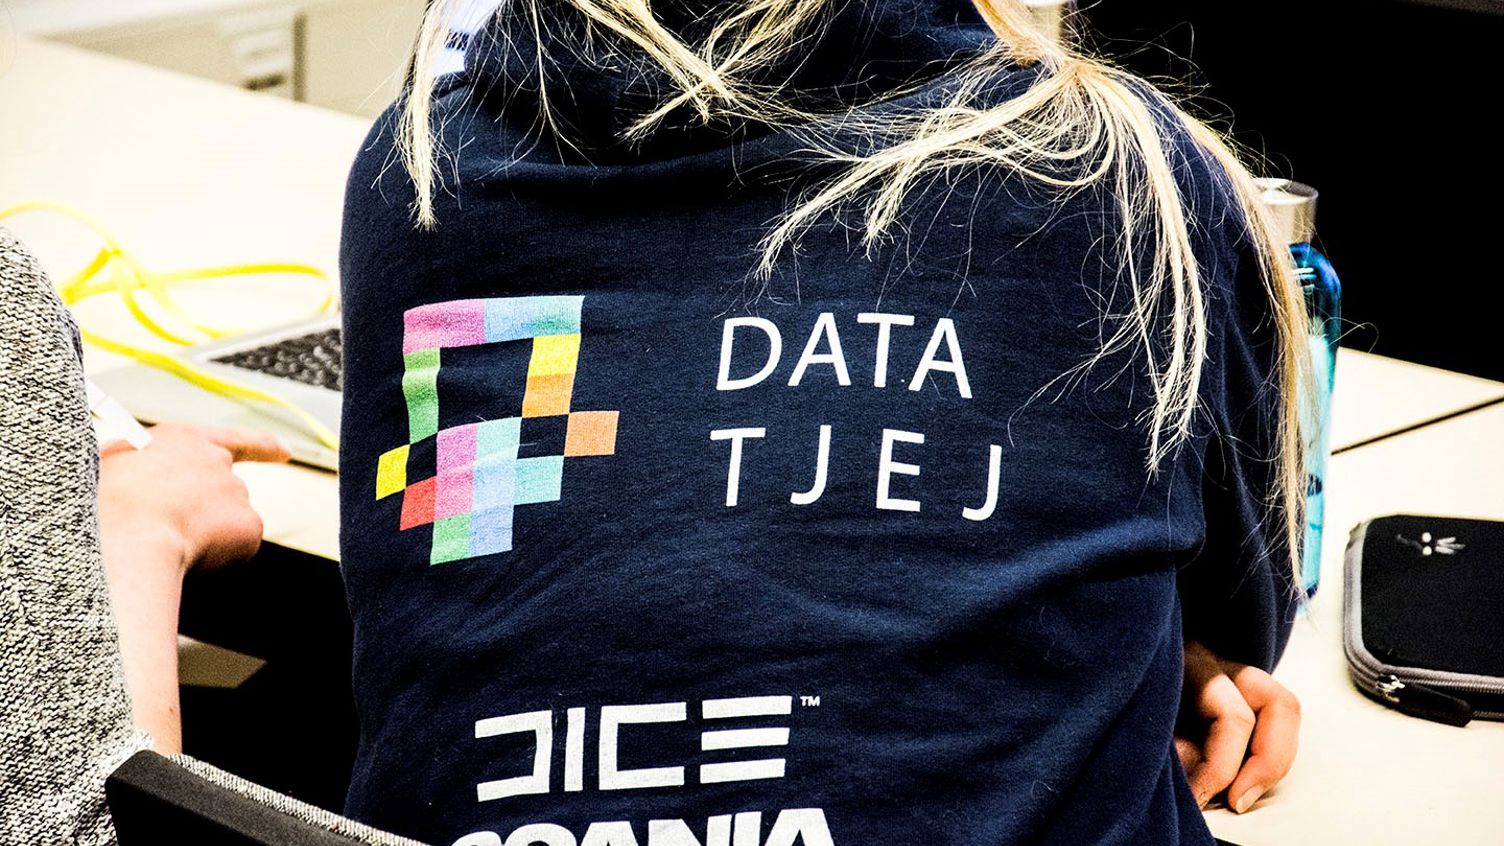 Ryggtavla av person med blå tröja där det står Data Tjej i form av en logotyp.